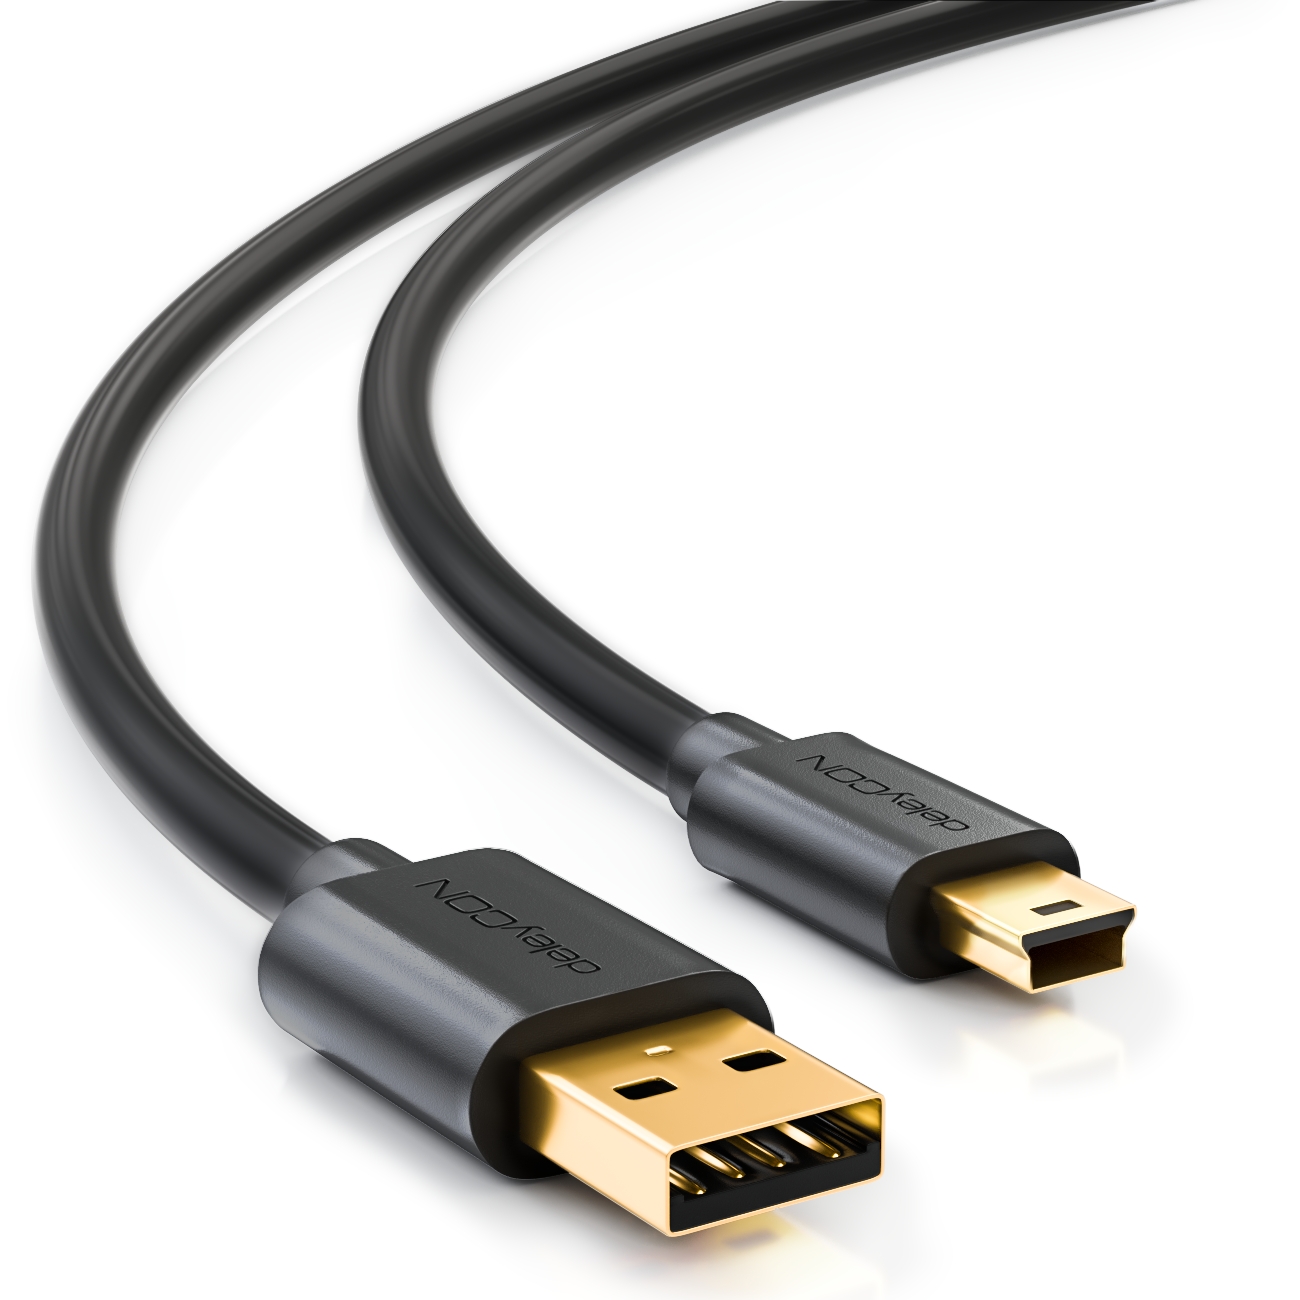 Ballylelly USB-zu-HDTV-Kabel Yeworth 0,5 m USB 2.0-Stecker zu HDTV-Stecker-Ladekabel 